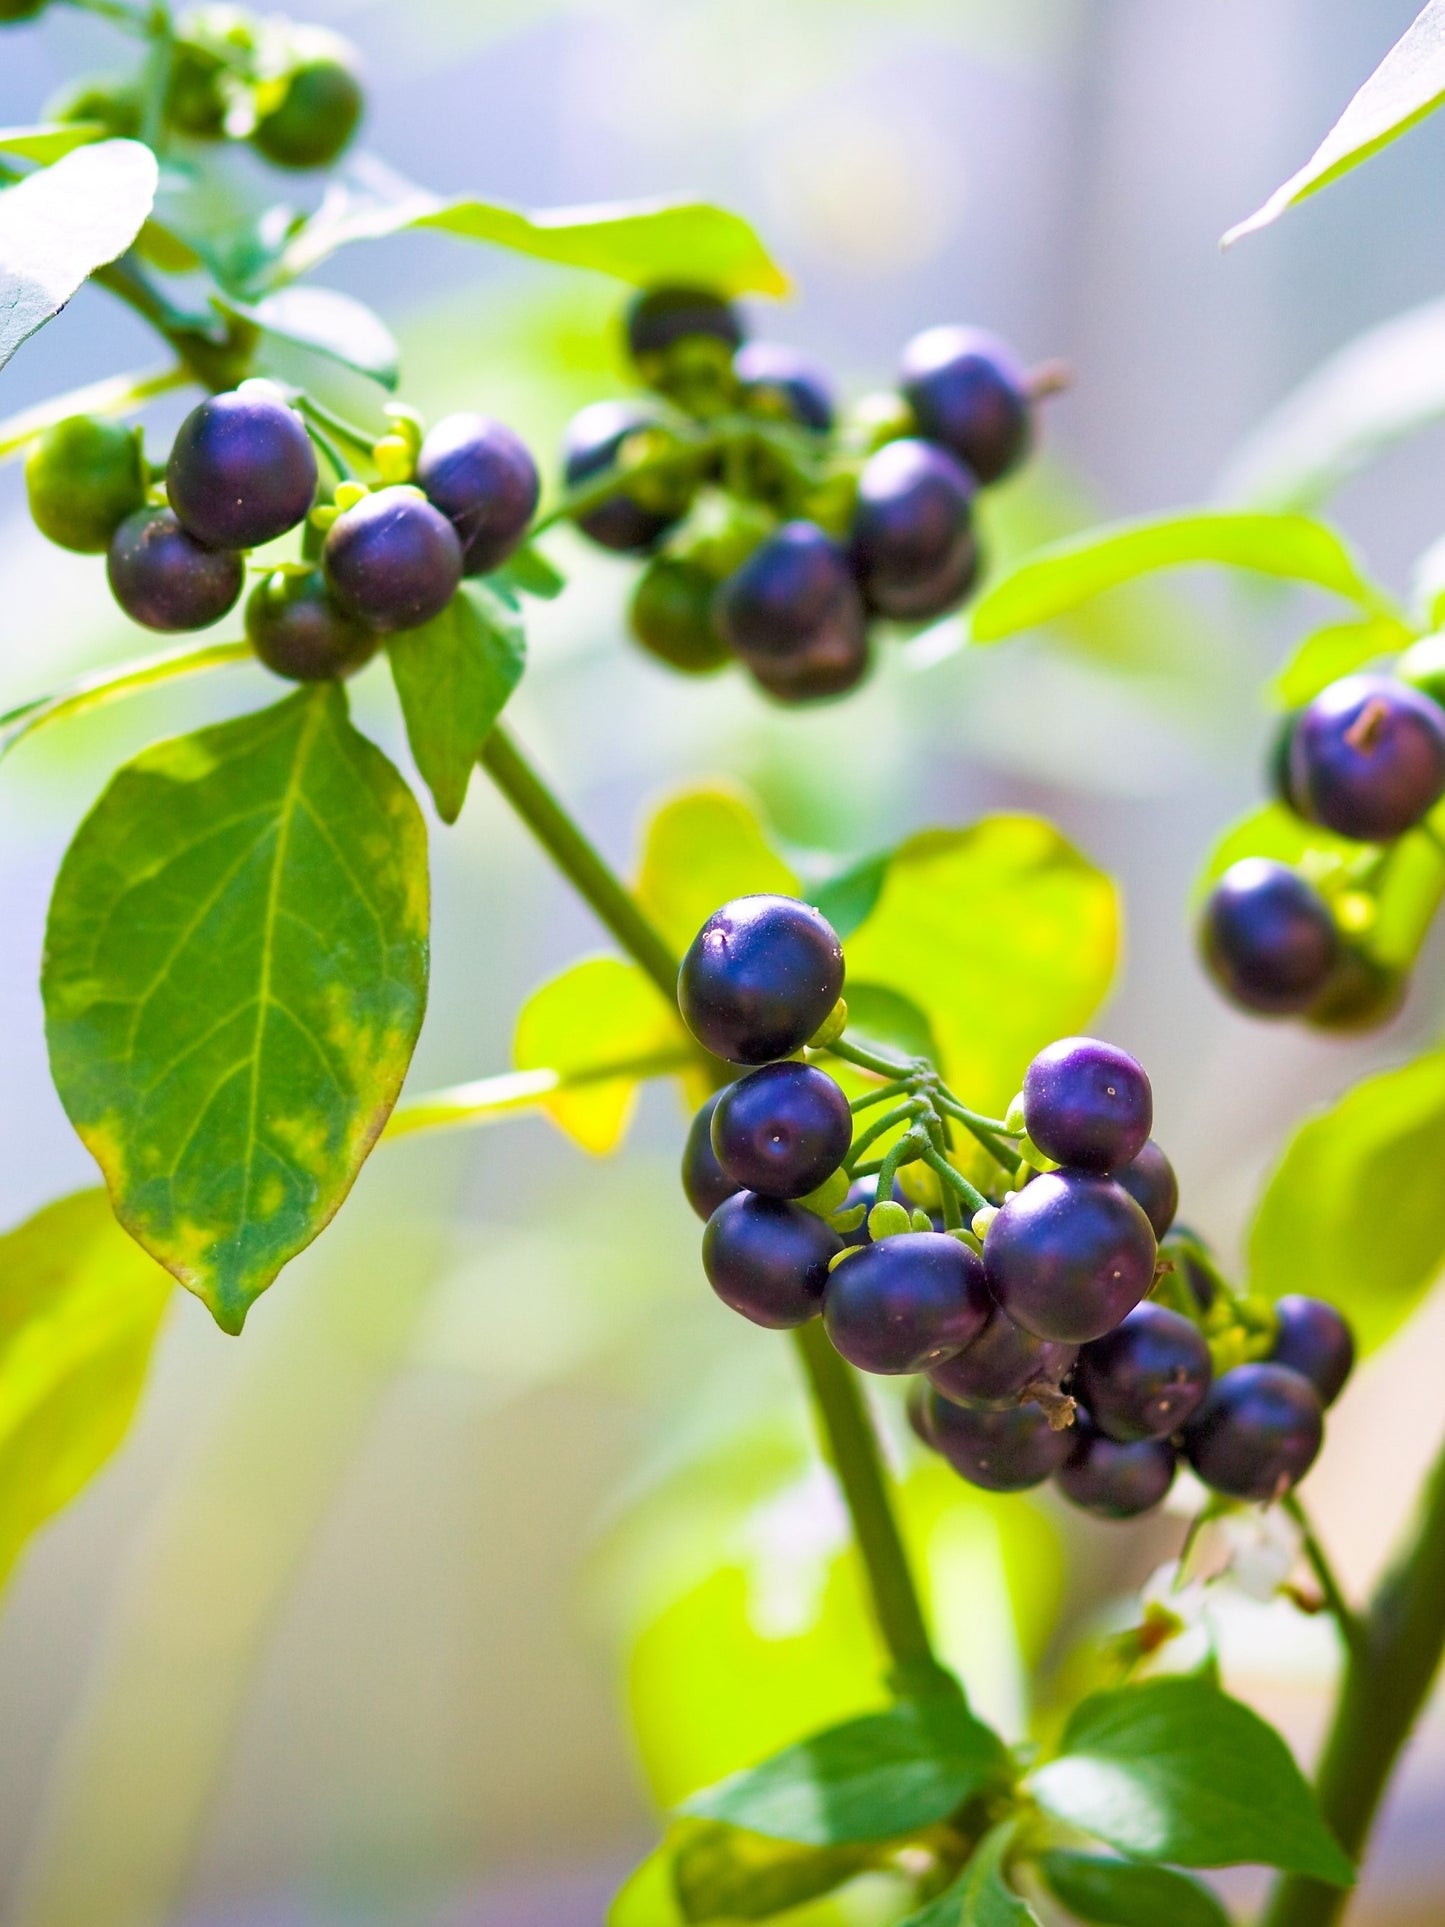 100 WONDERBERRY aka Sunberry Solanum Burbankii Retroflexum Fruit Berry Shrub Seeds